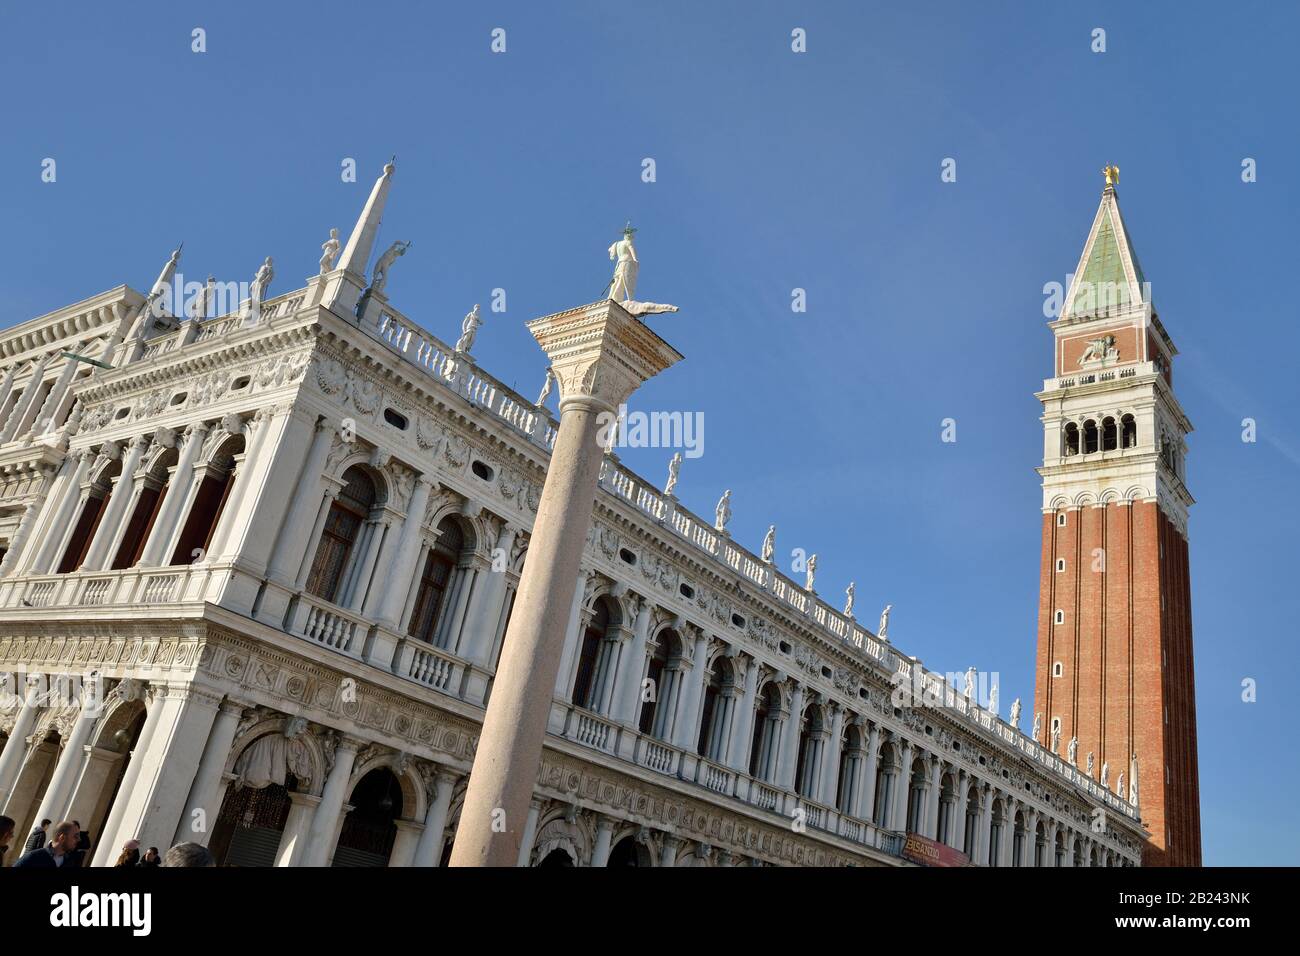 Venezia, Piazza San Marco - Piazza San Marco (Biblioteca Nazionale Marciana - Biblioteca Sansovino), Patrimonio Dell'Umanità Dell'Unesco - Veneto, Italia, Europa Foto Stock